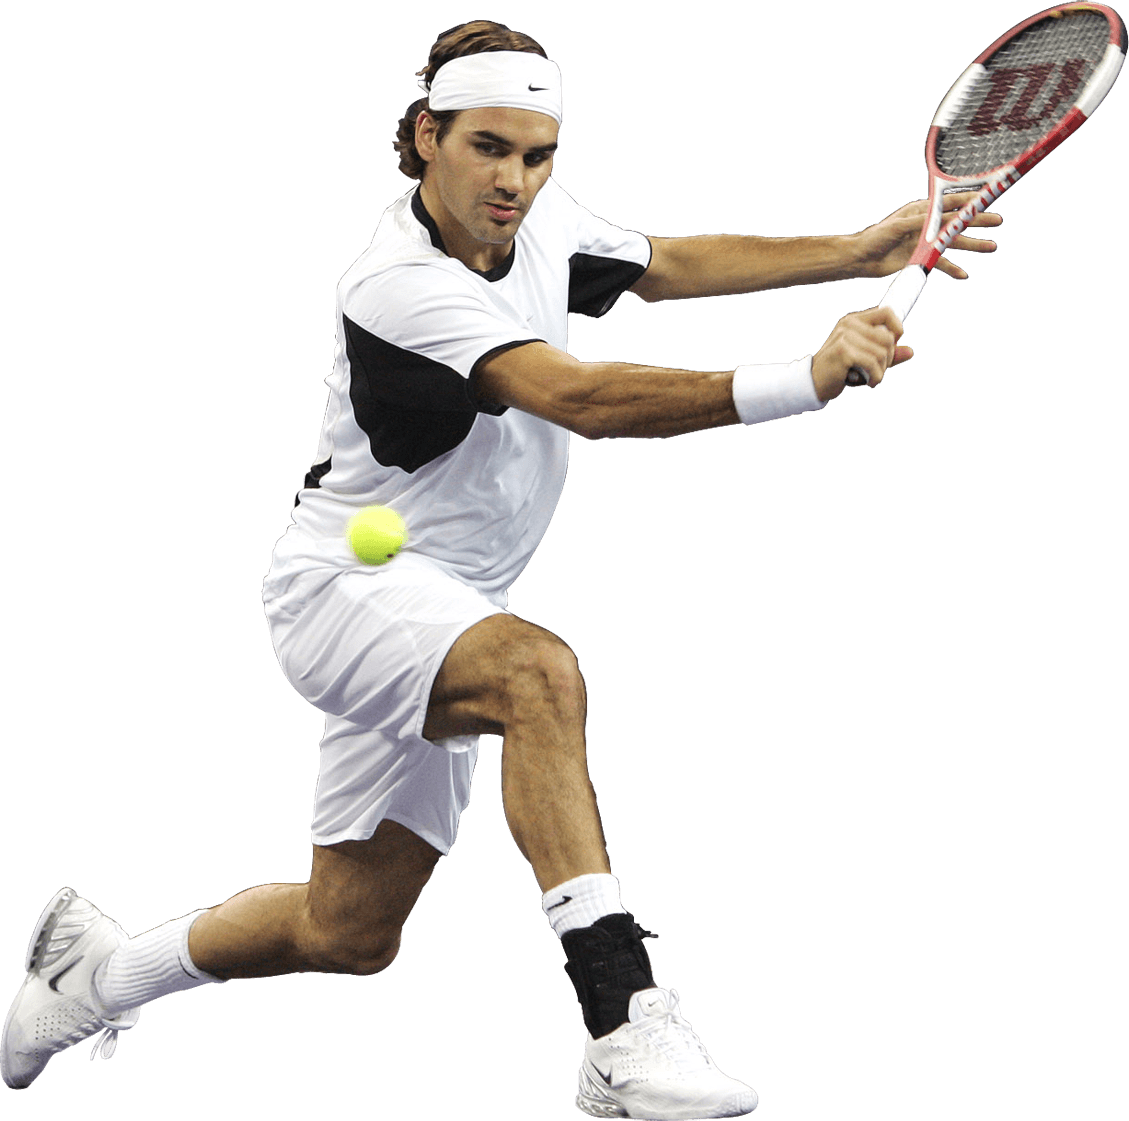 لاعب تنس الصورة شفافة